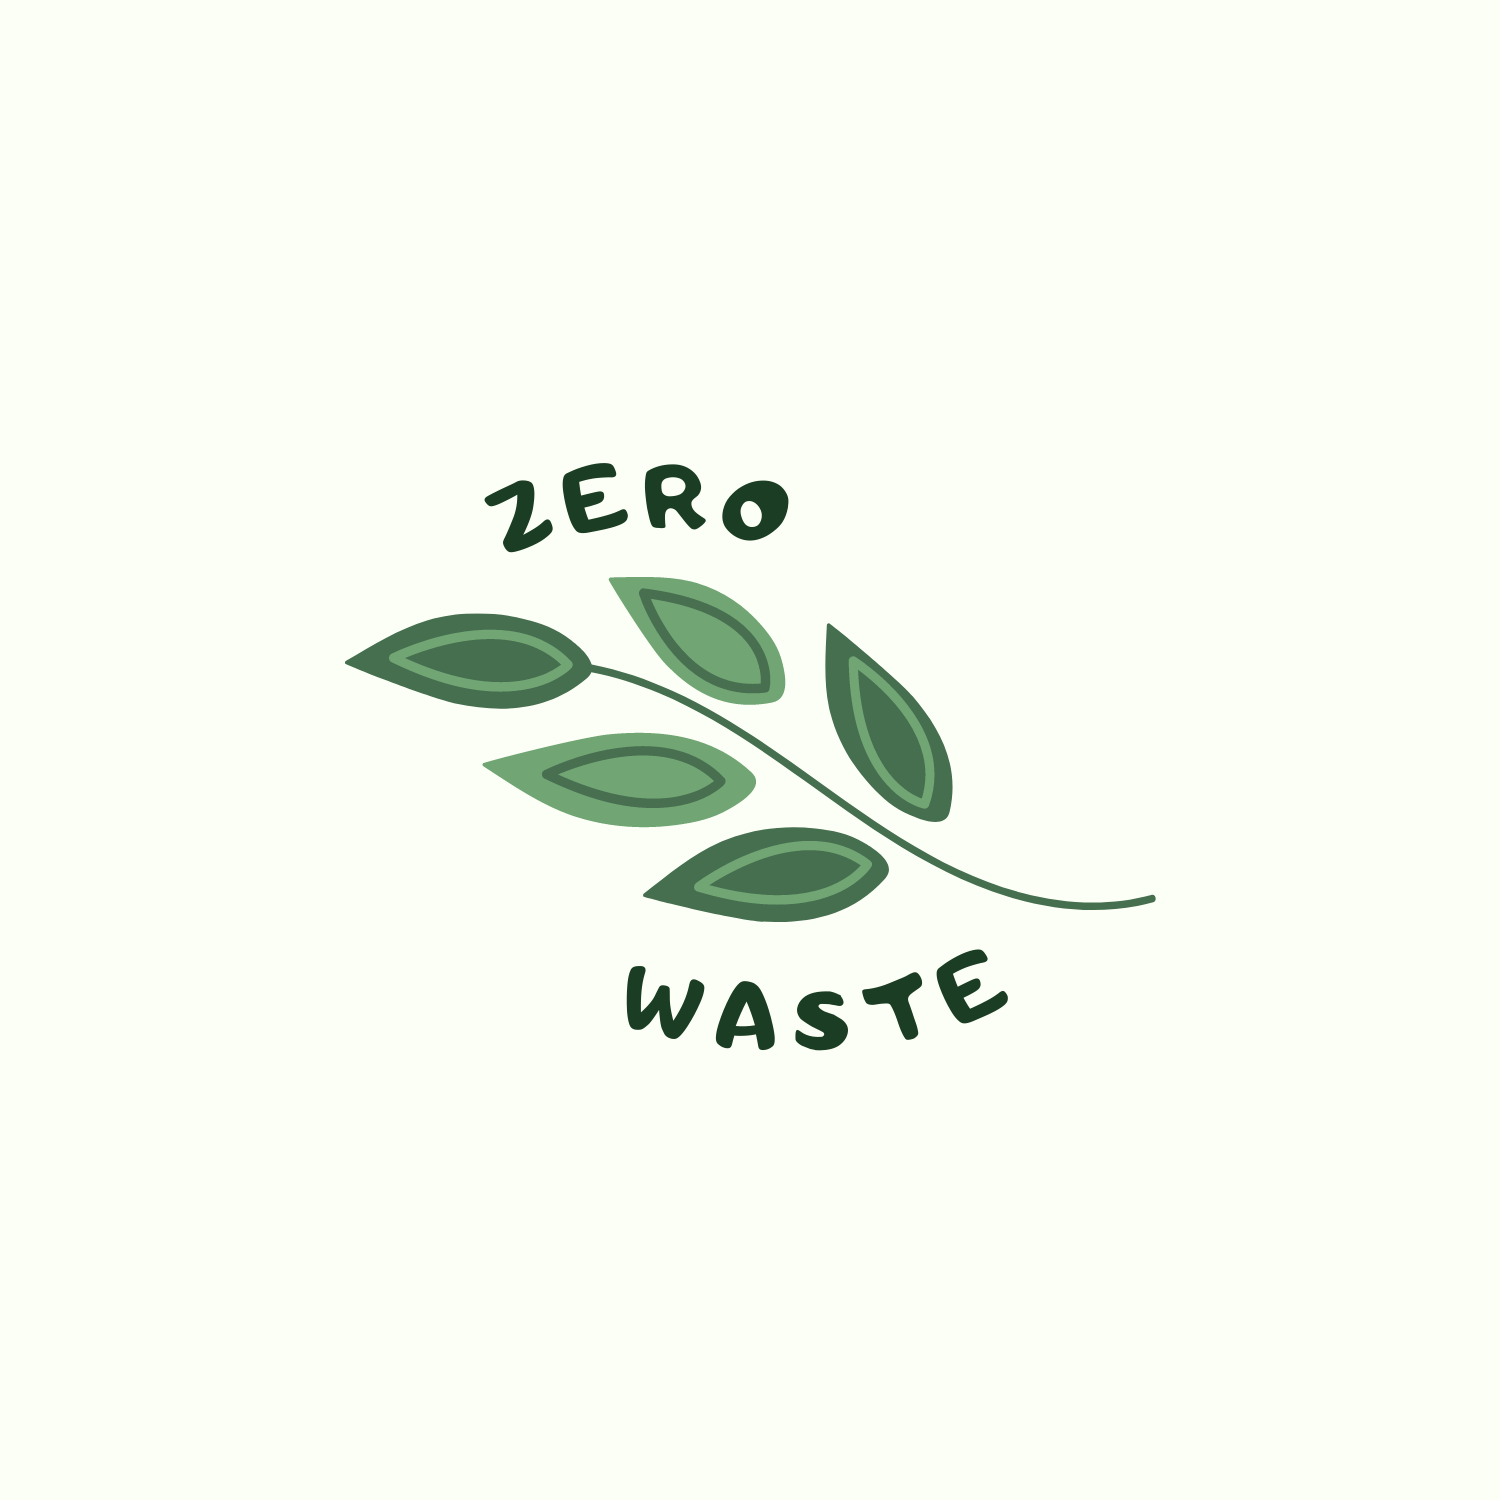 Zero Waste 